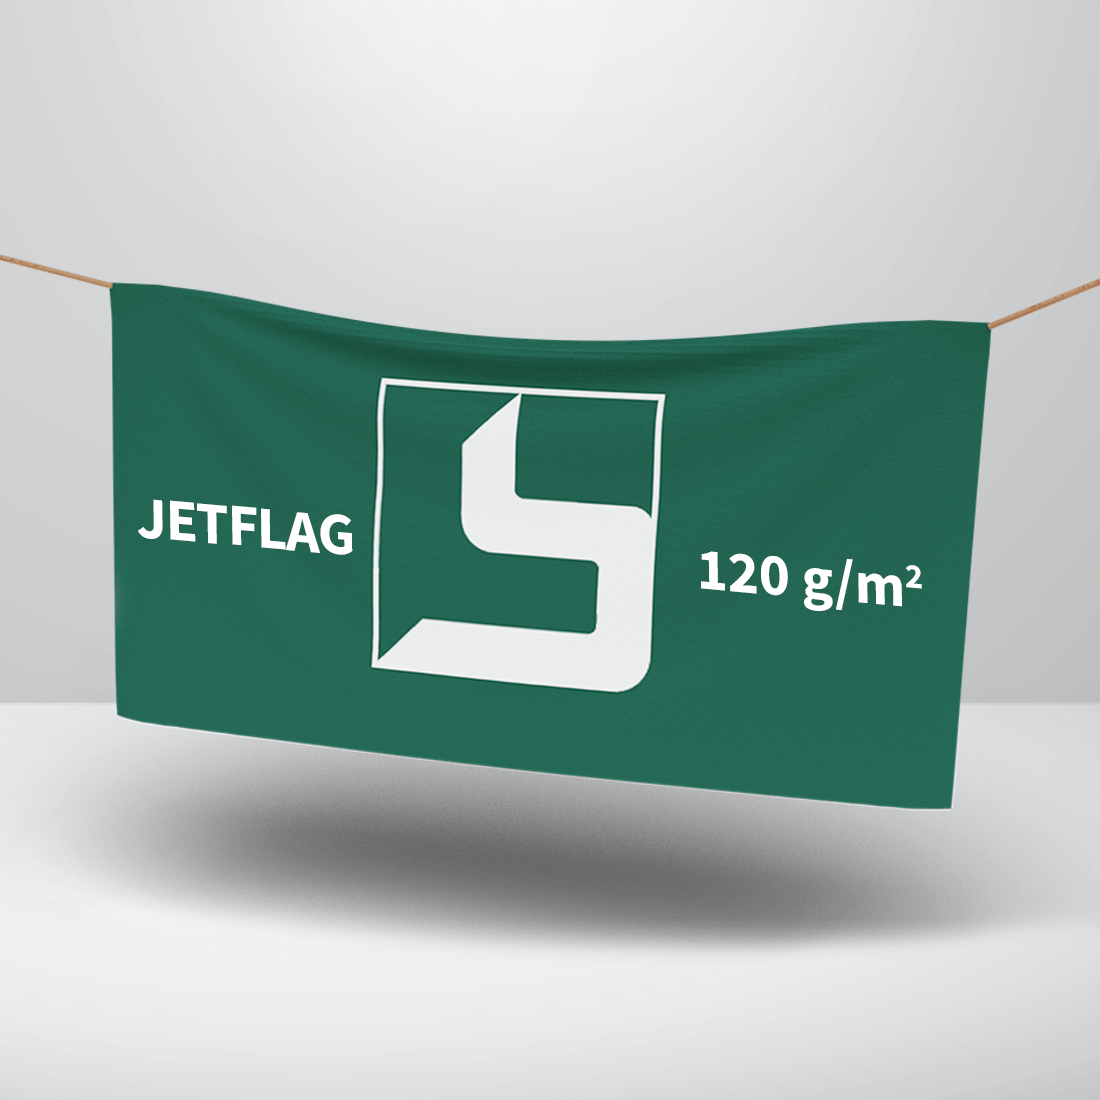 Texstil banner JETFLAG: 120 g/m2